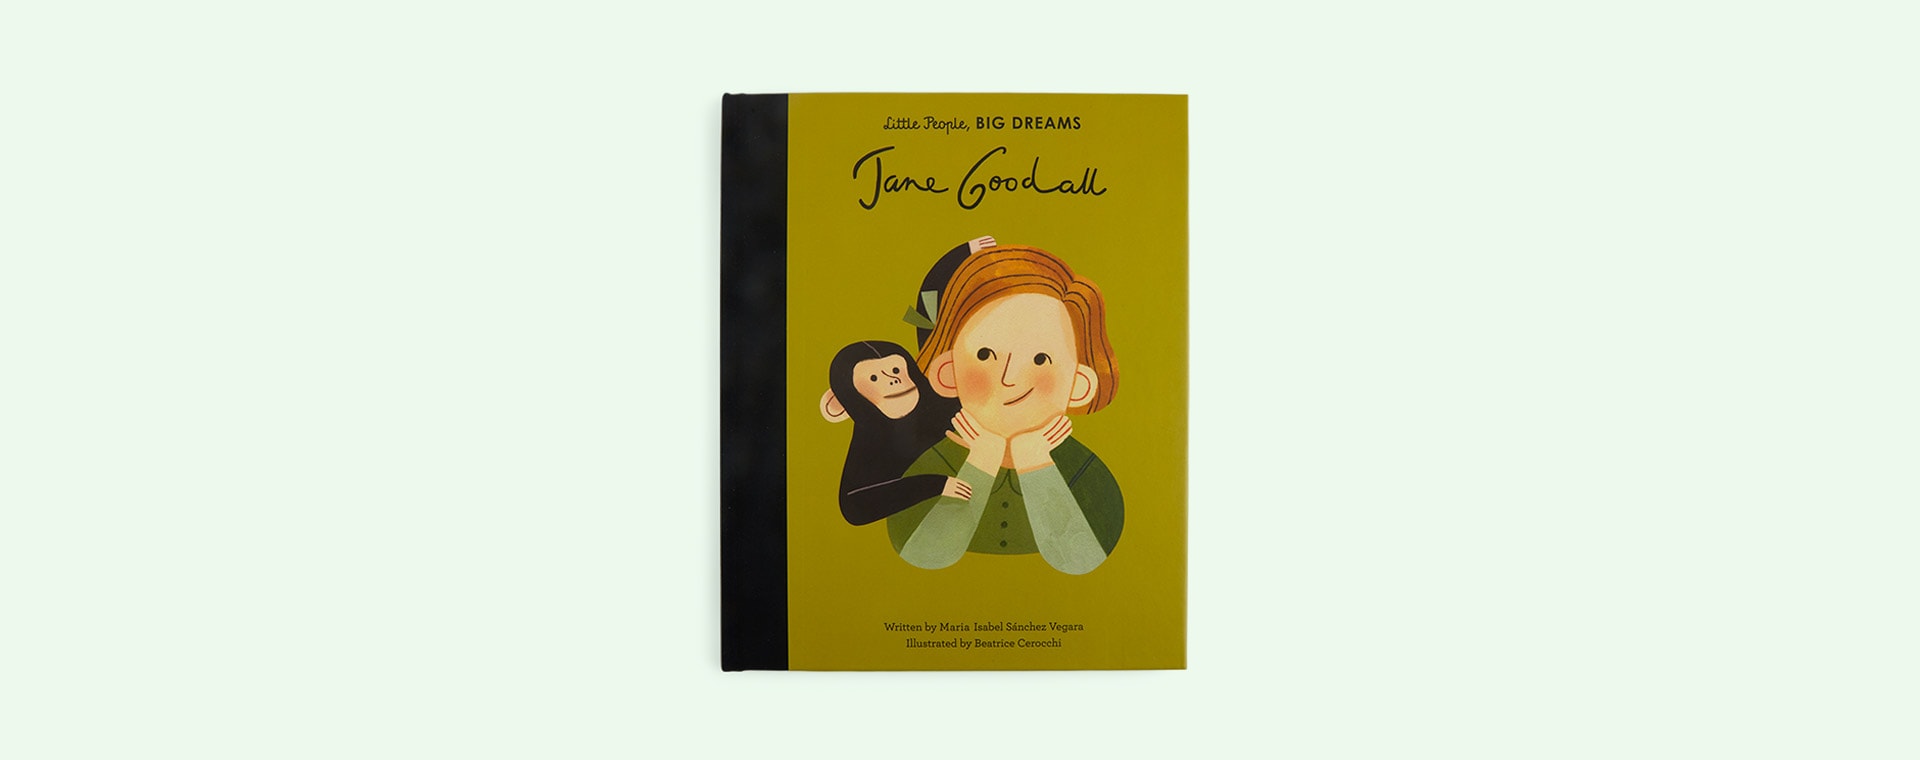 Multi bookspeed Little People Big Dreams: Jane Goodall